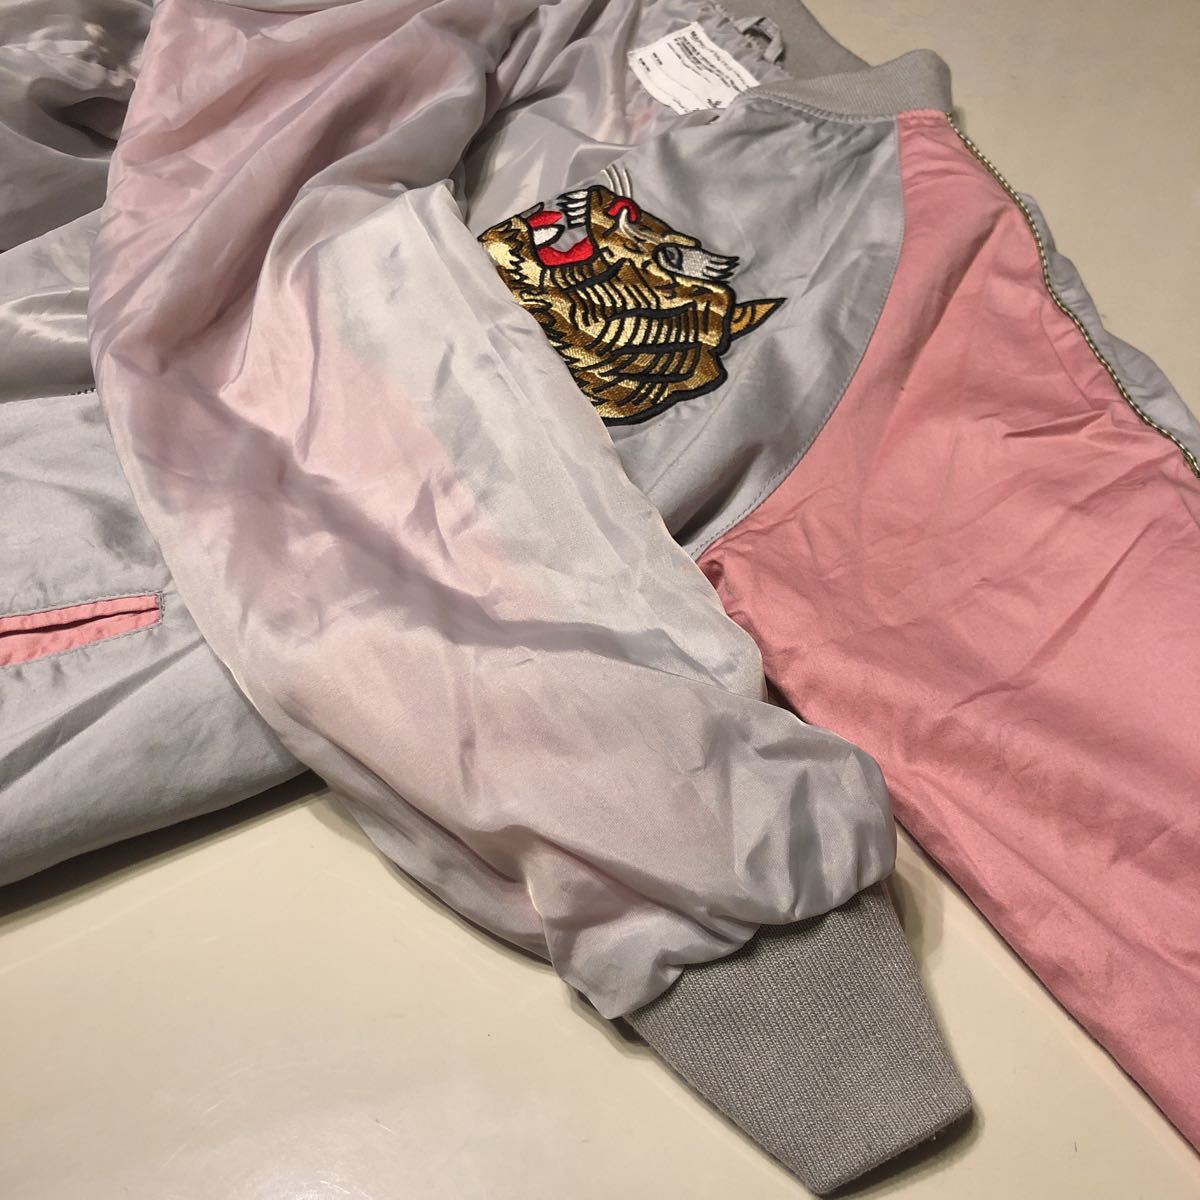 スカジャン 刺繍 MARKEY'S BIG FIELD 2 レディース タイガー 人気商品 完売 ピンク